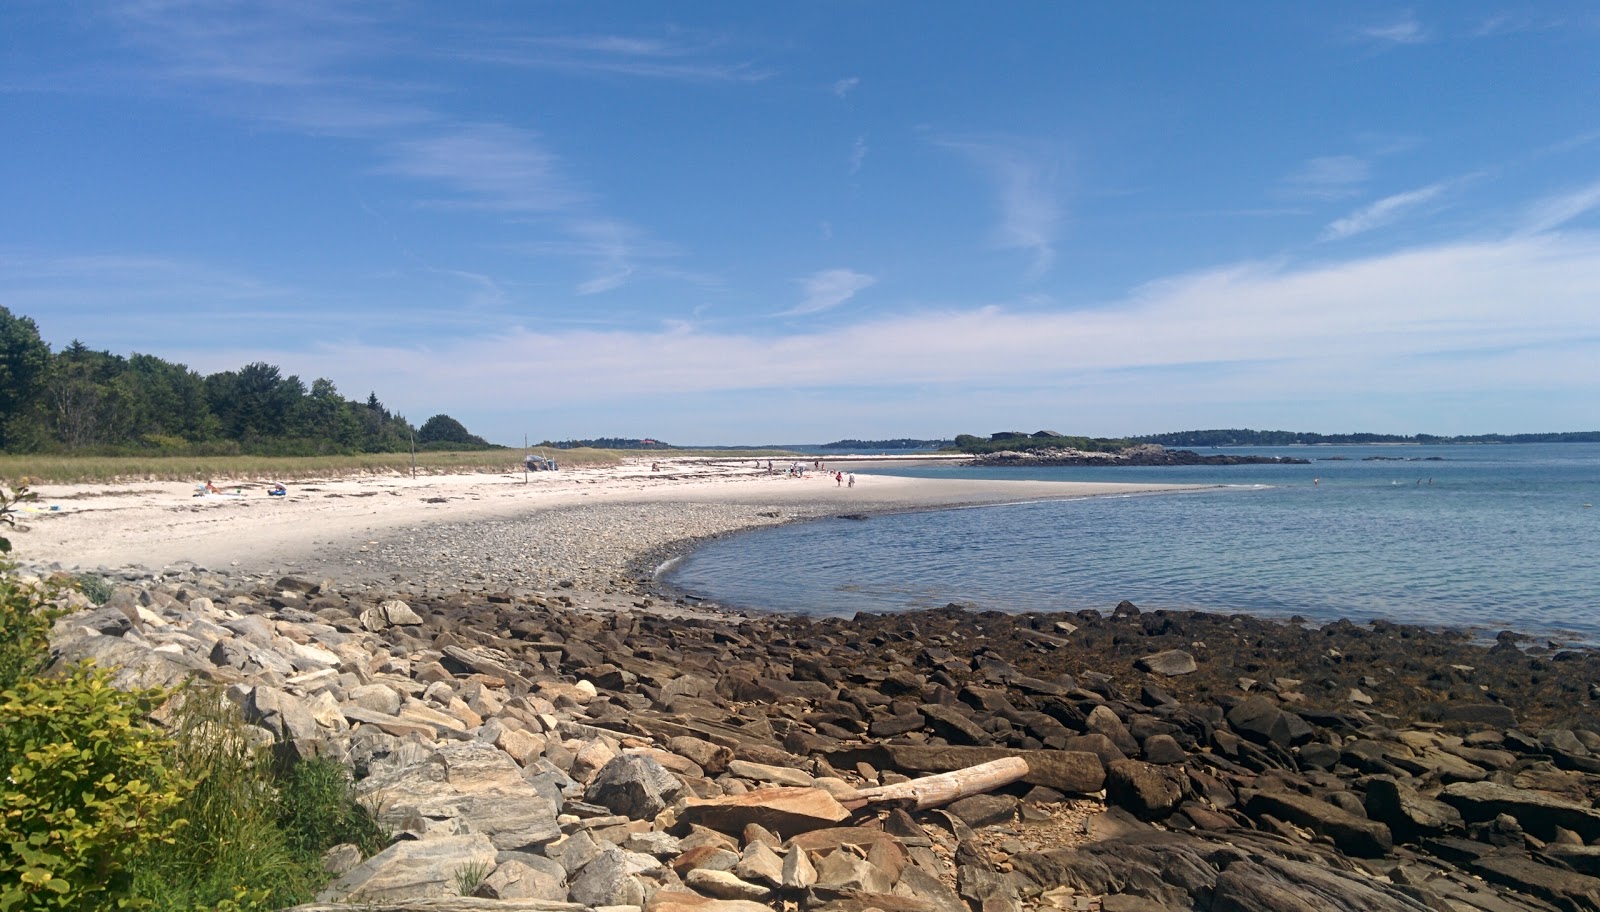 Foto de Andrews beach com areia clara e seixos superfície